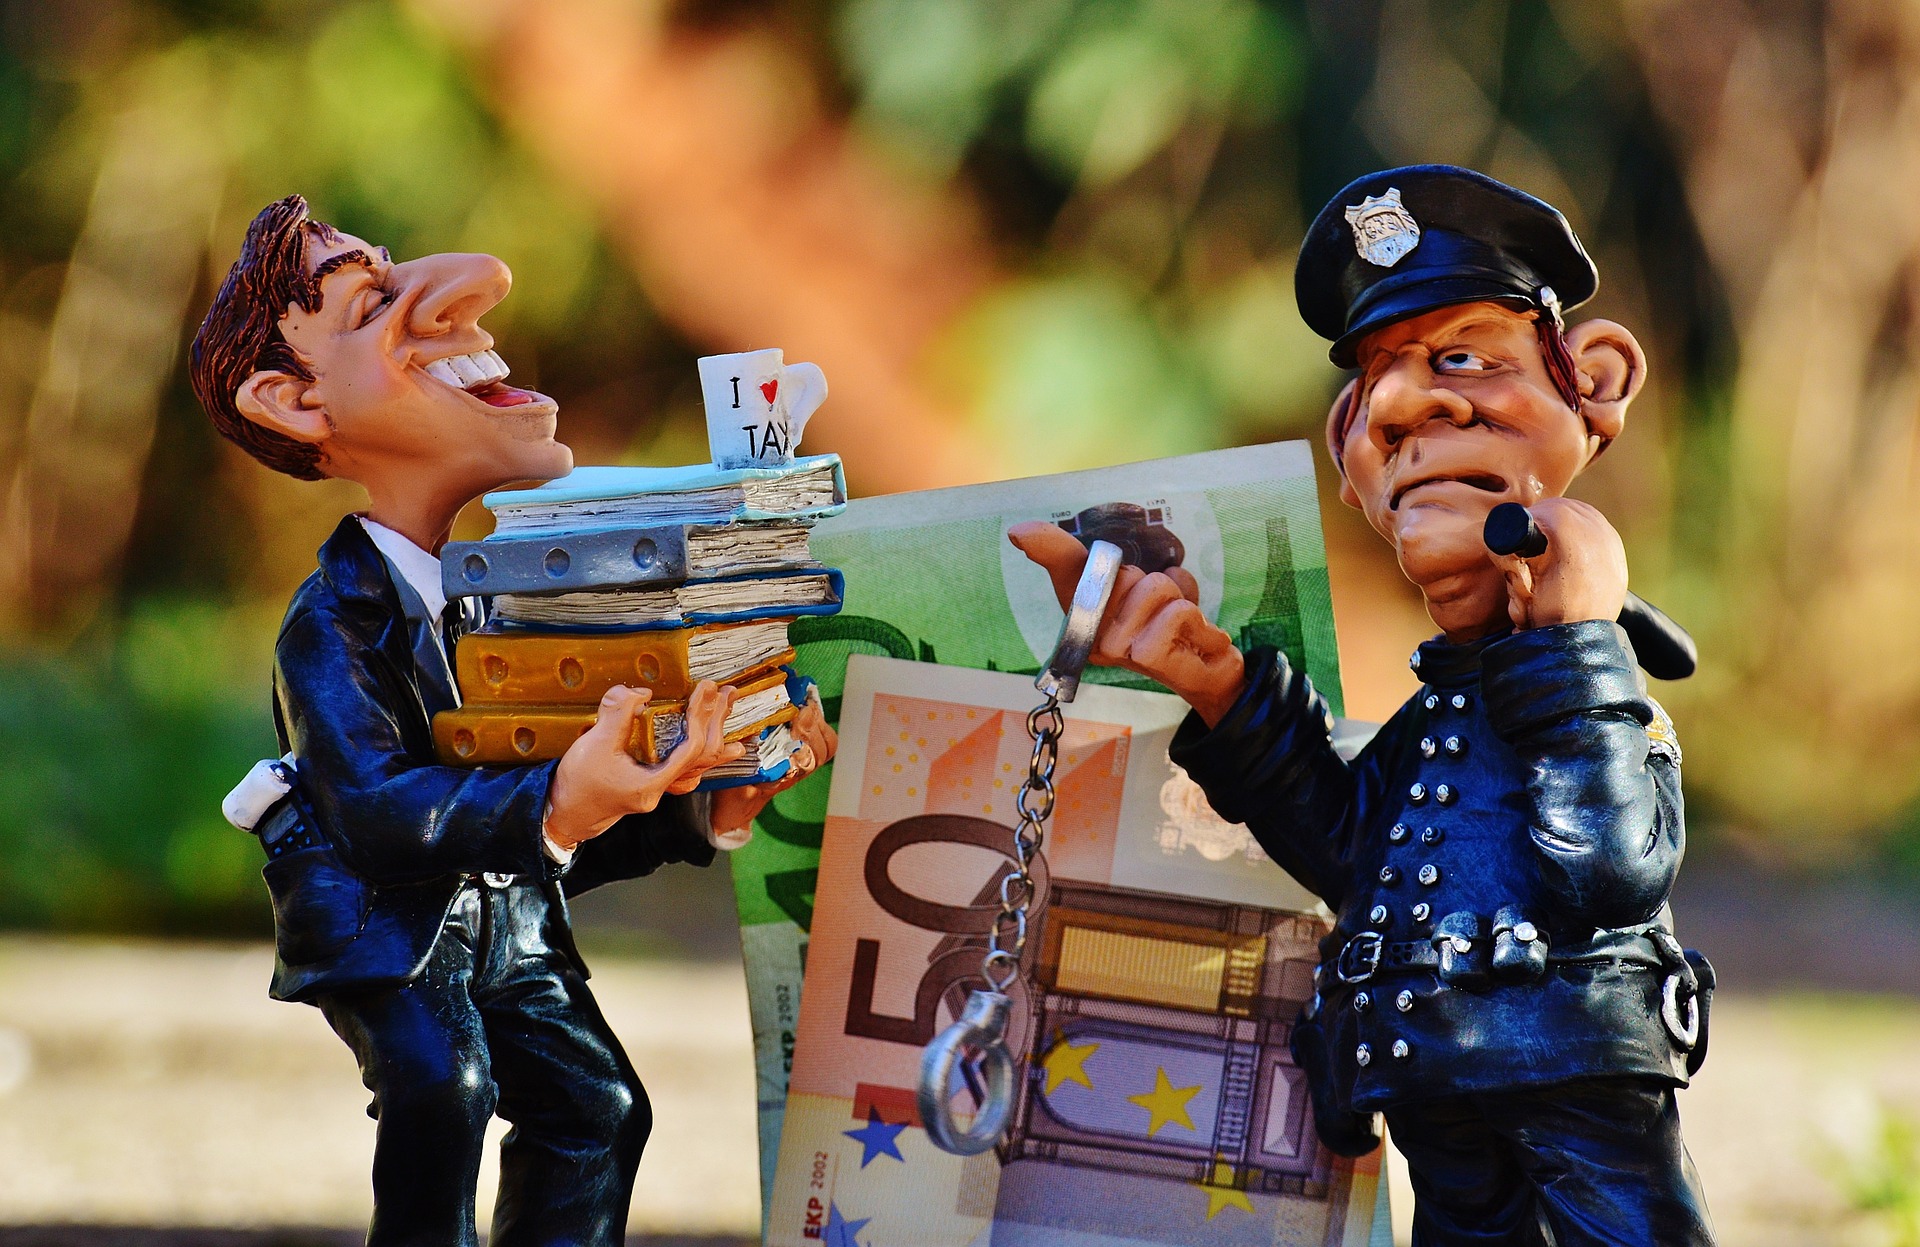 Animación, persona con libros sobre la mano a un costado dinero, frente a él un policía.  